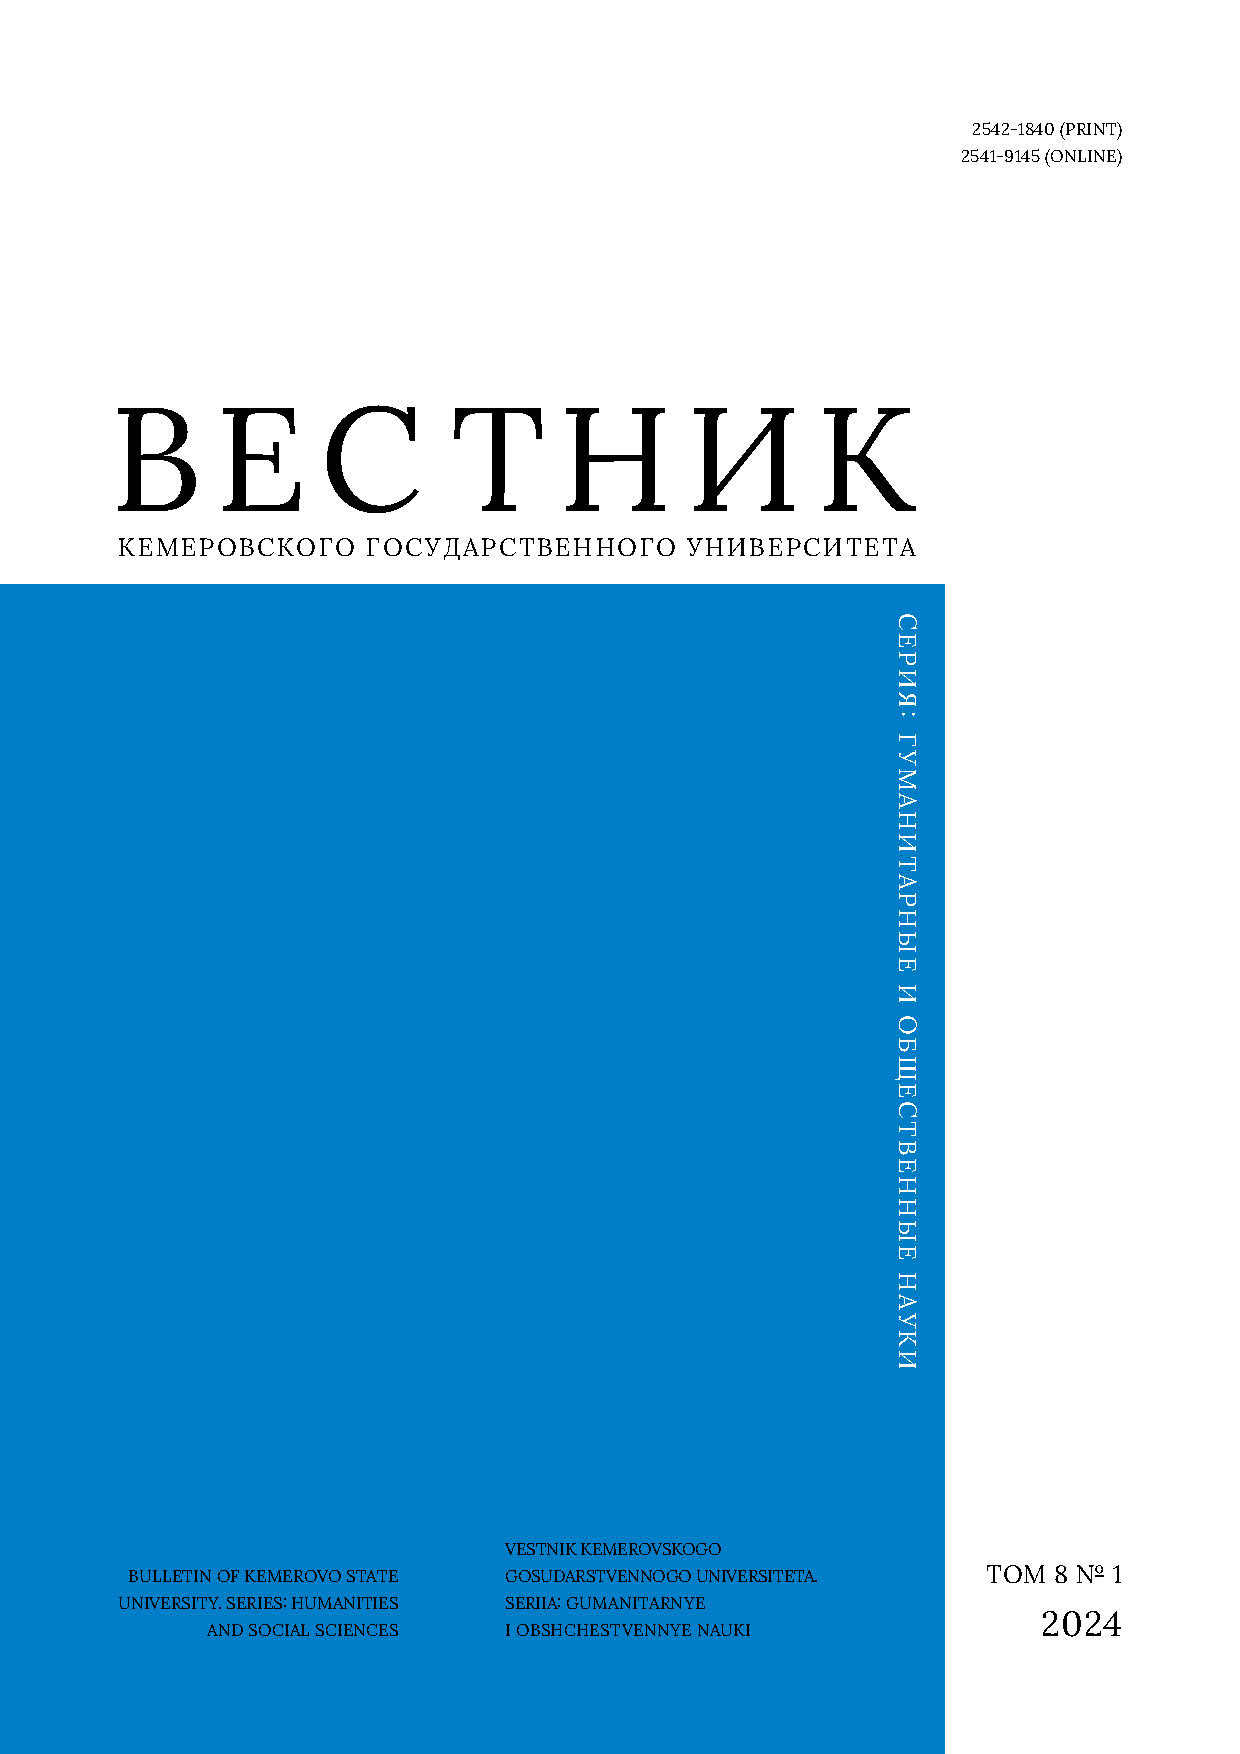             Модели управления развитием городских агломераций в России: юридический анализ
    